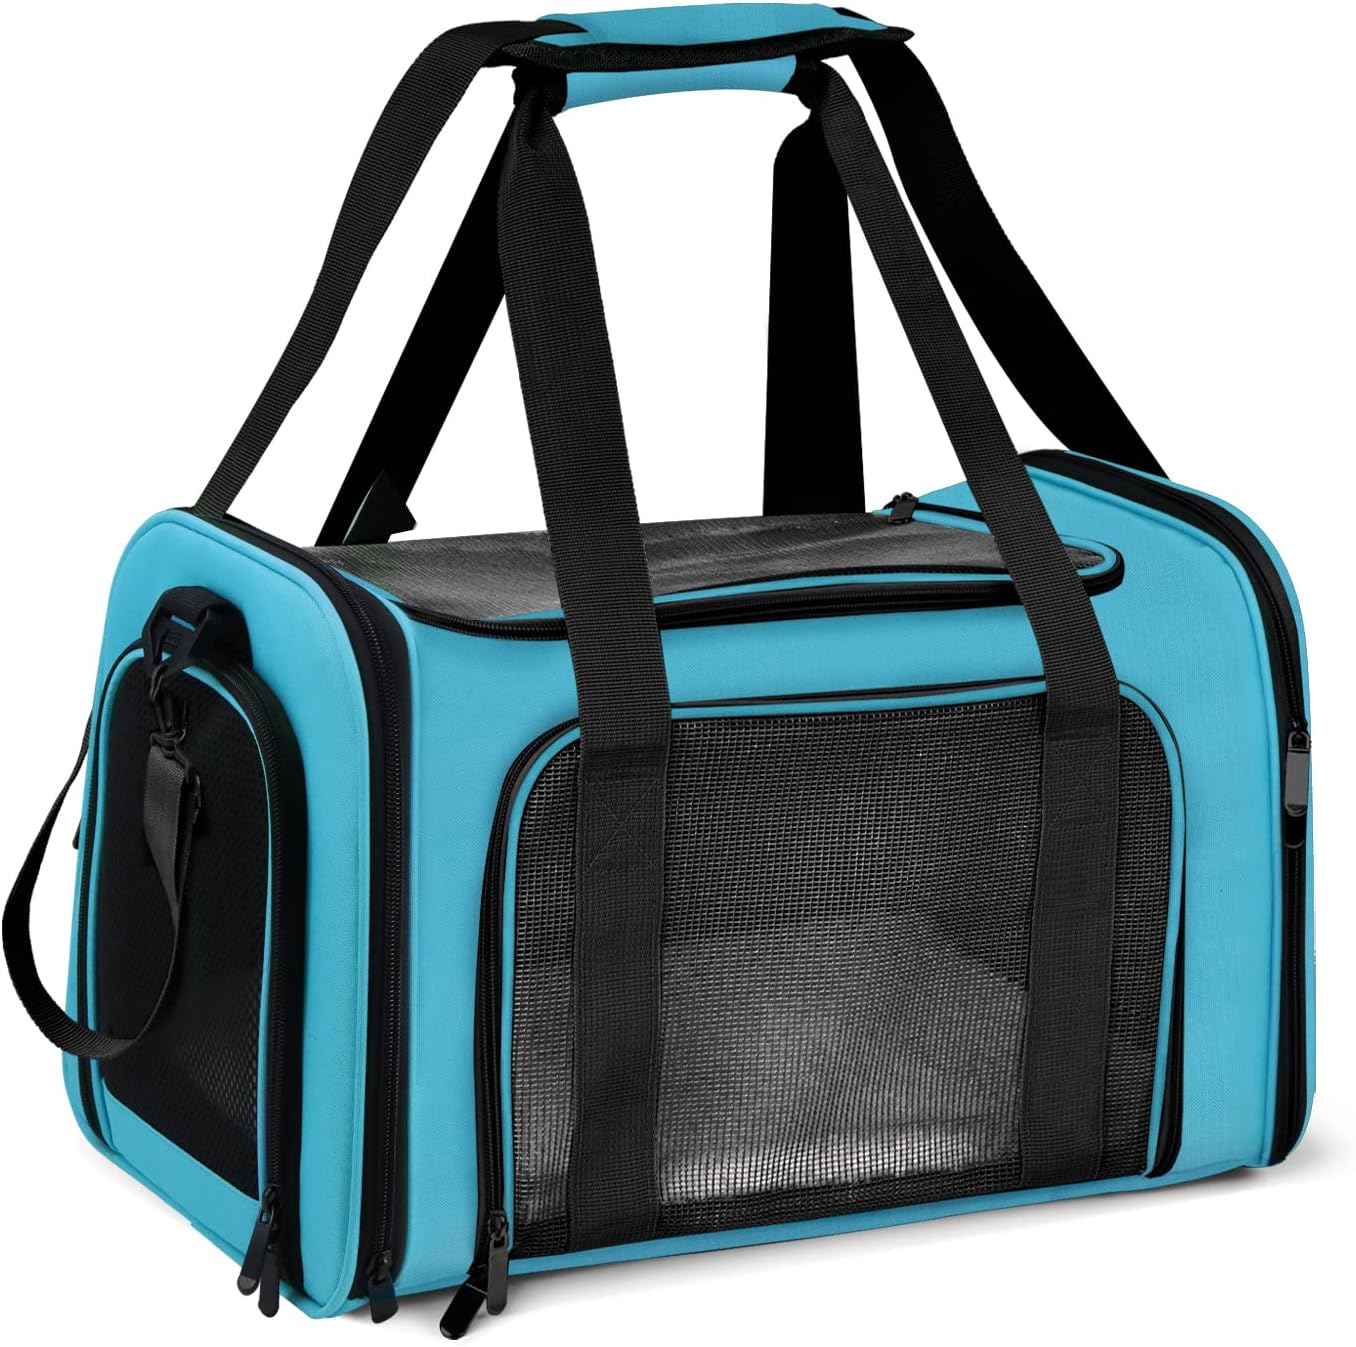 BarkBarking Dog Carrier Bag - BLUE-1